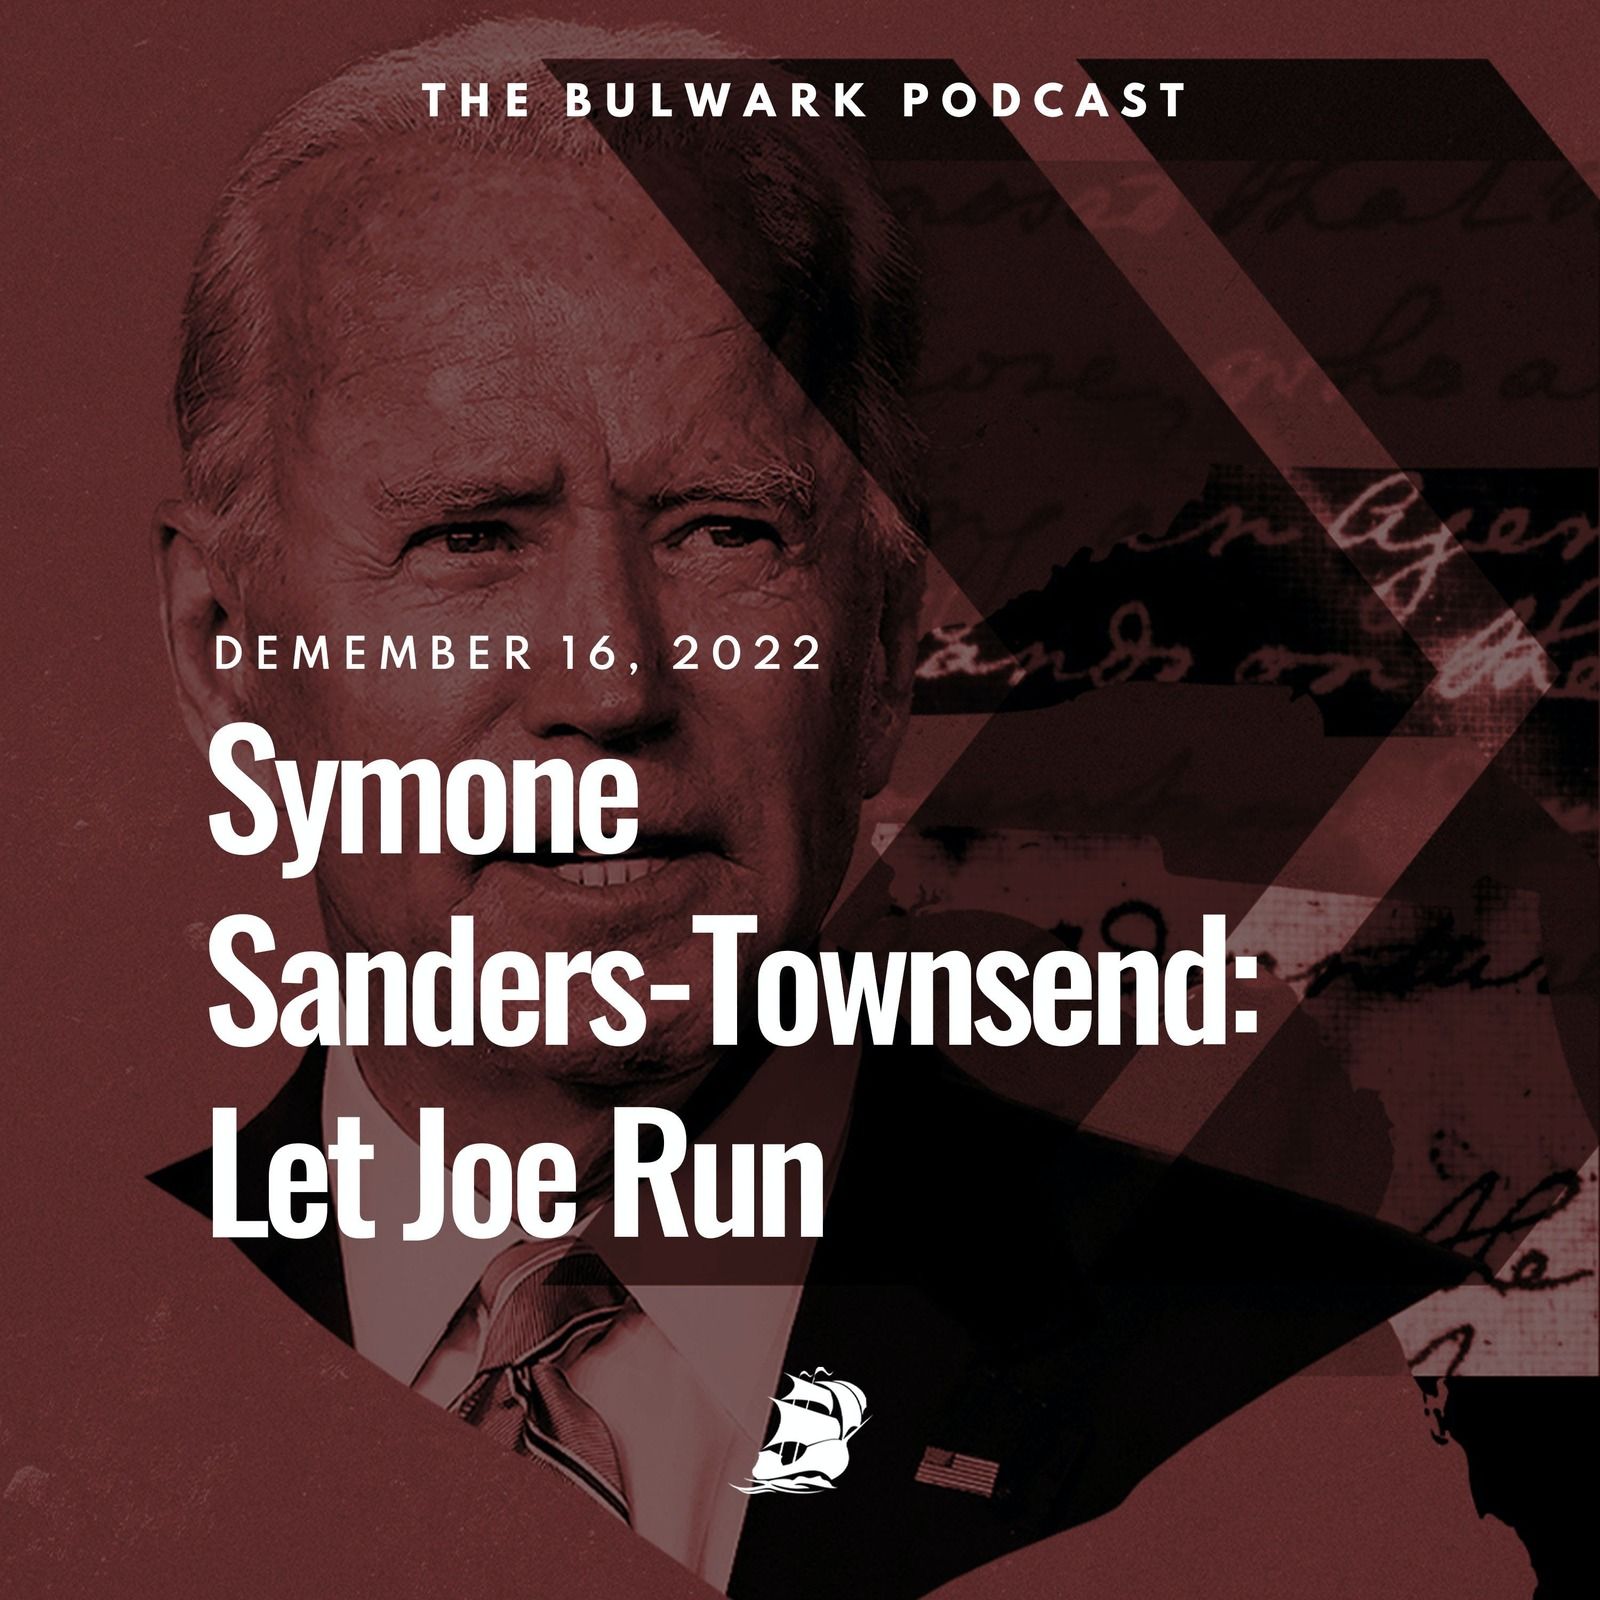 Symone Sanders-Townsend: Let Joe Run by The Bulwark Podcast